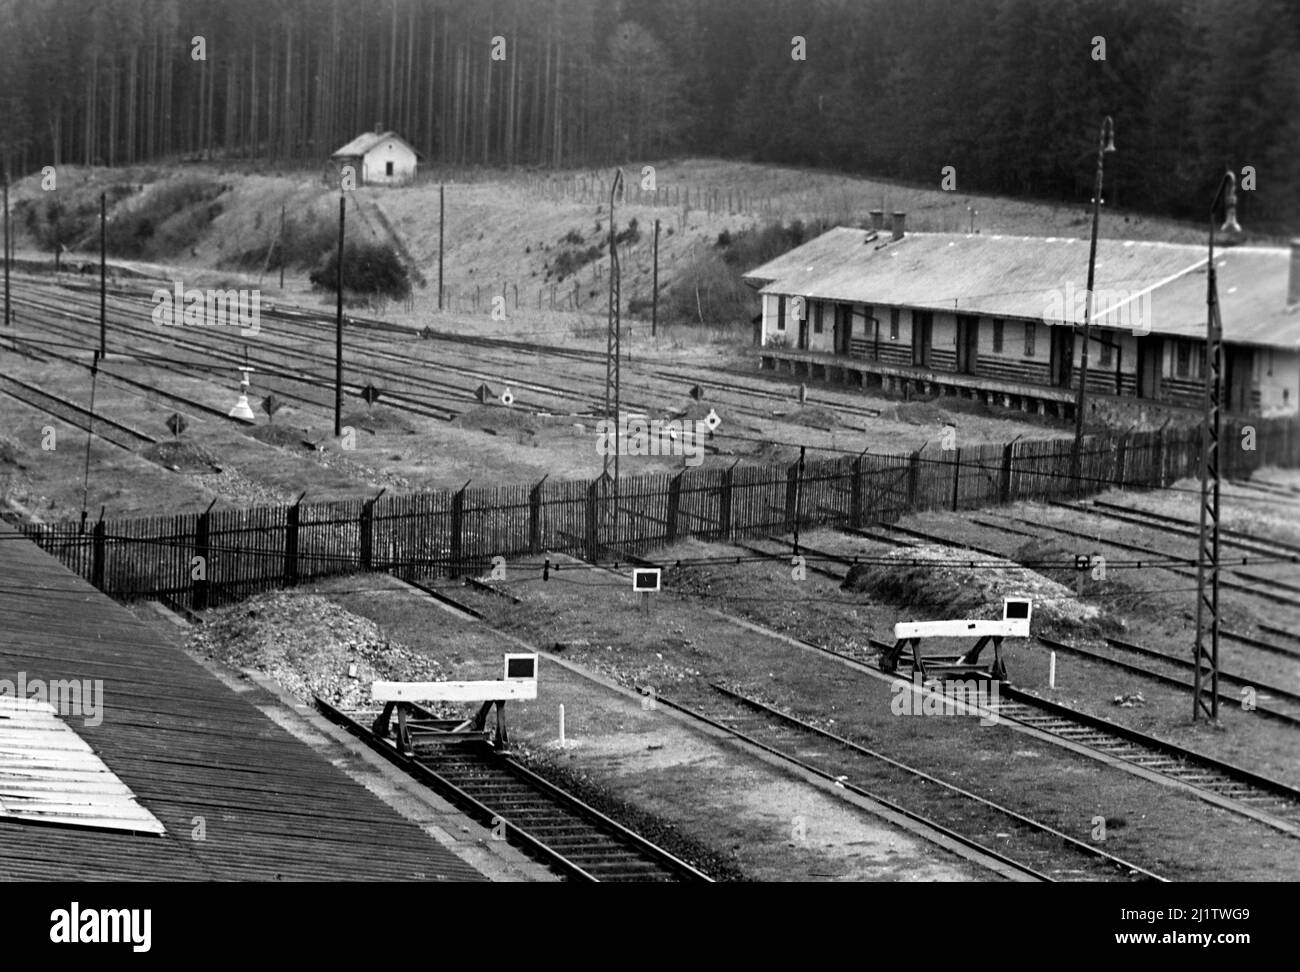 Blick auf stillgelegte Gleise in der Tschechowlowakei von Bayerisch Eisenstein aus, 1958. Vue de pistes fermées en Tchécoslovaquie de Bayerisch Eisenstein, 1958. Banque D'Images